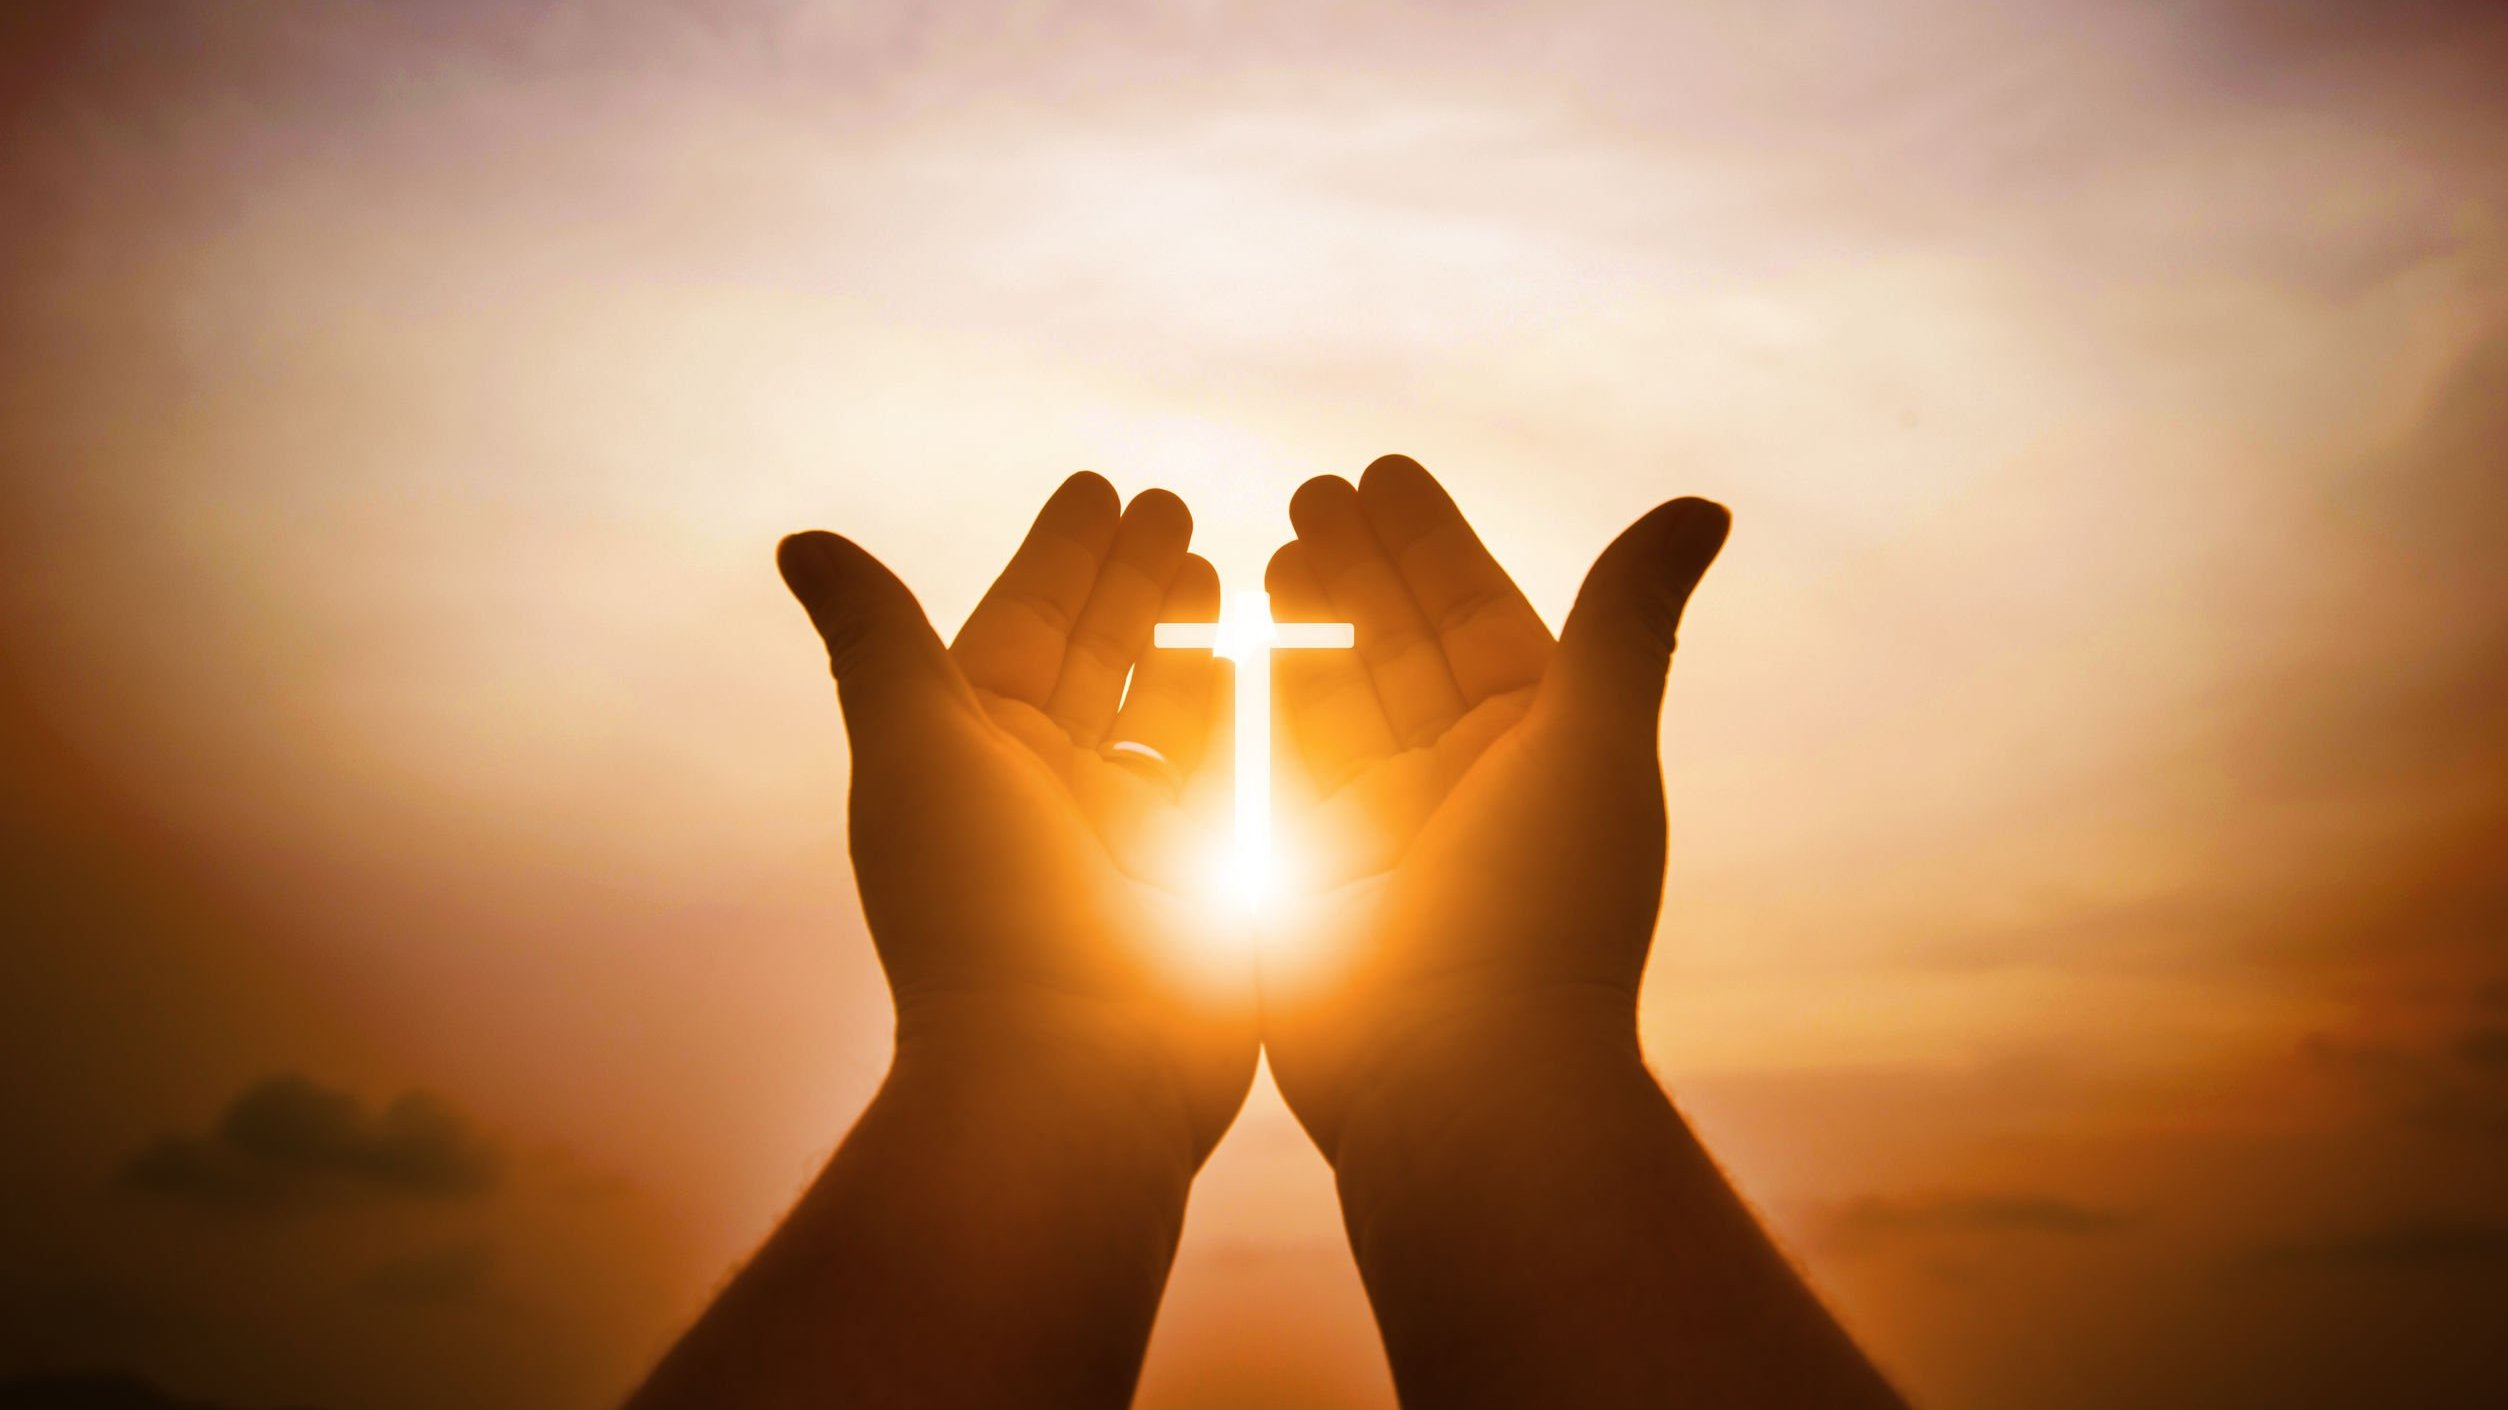 Cruz iluminada entre as mãos de uma pessoa, ao pôr do sol